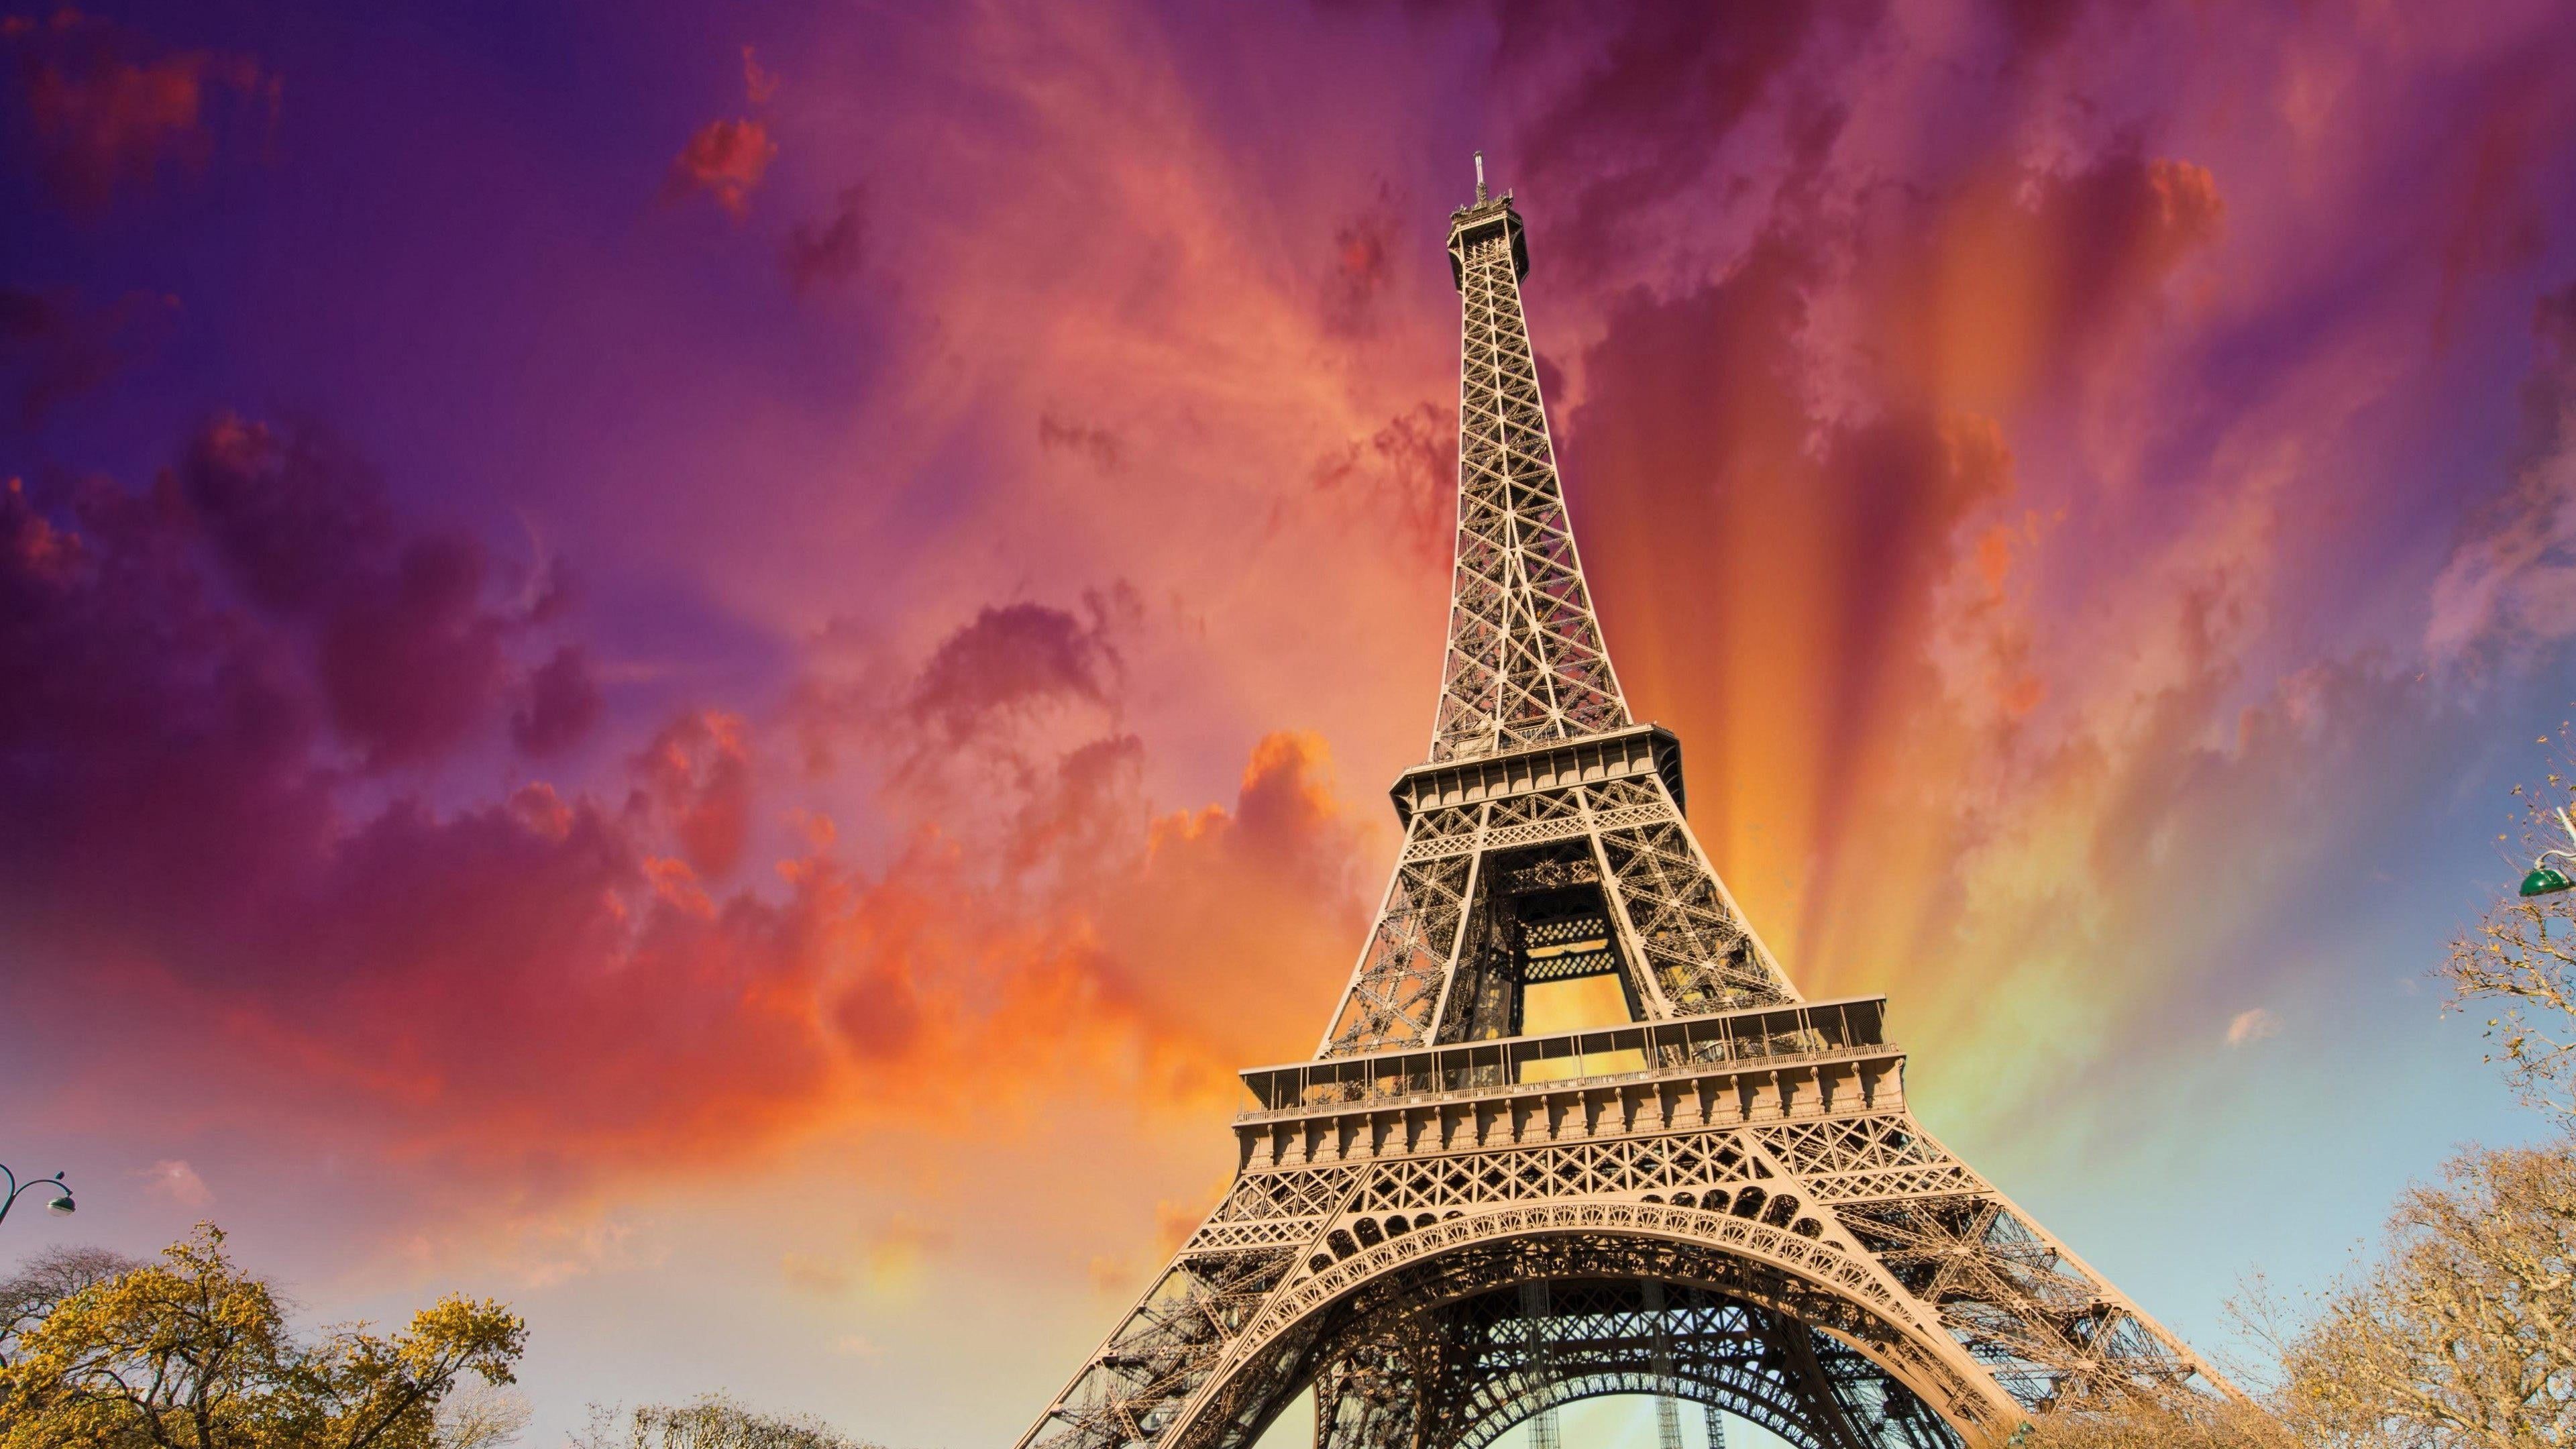 eiffel tower #paris #france #sky #europe #tower #amazing #stunning K # wallpaper #hdwallpaper #desktop. HD wallpaper, Eiffel tower, Eiffel tower illustration